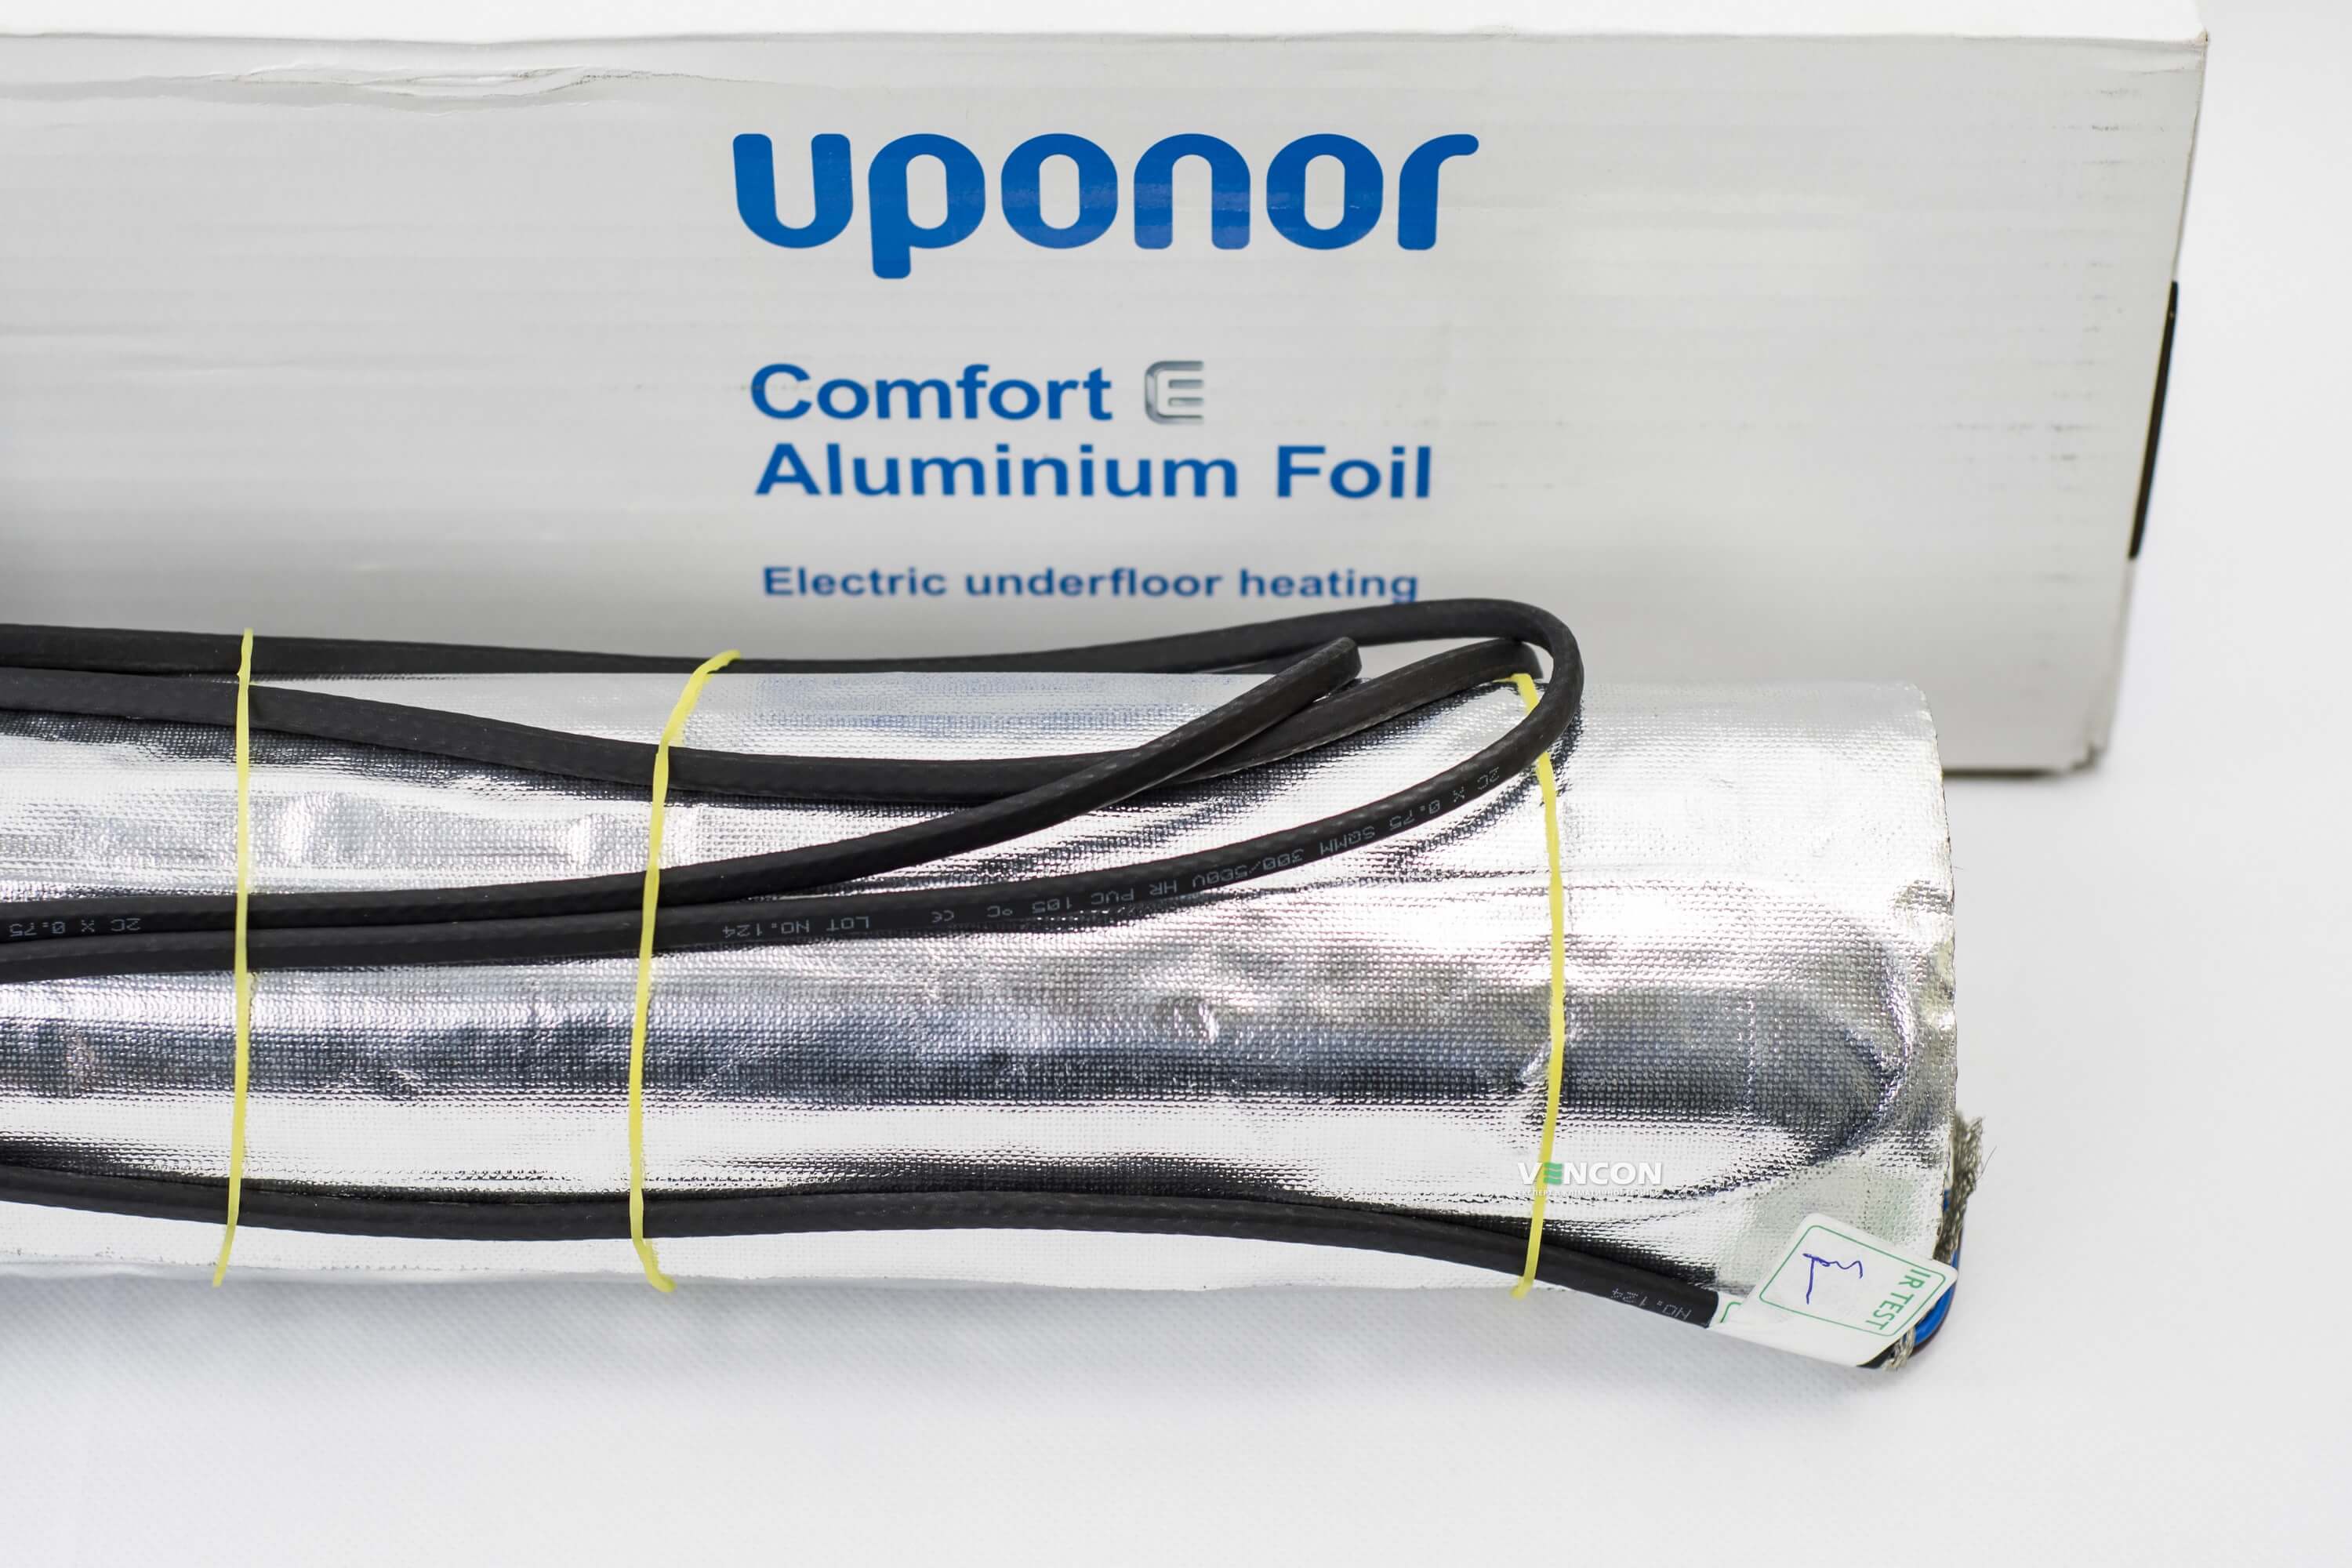 Электрический теплый пол Uponor Aluminium Foil 140-10 отзывы - изображения 5